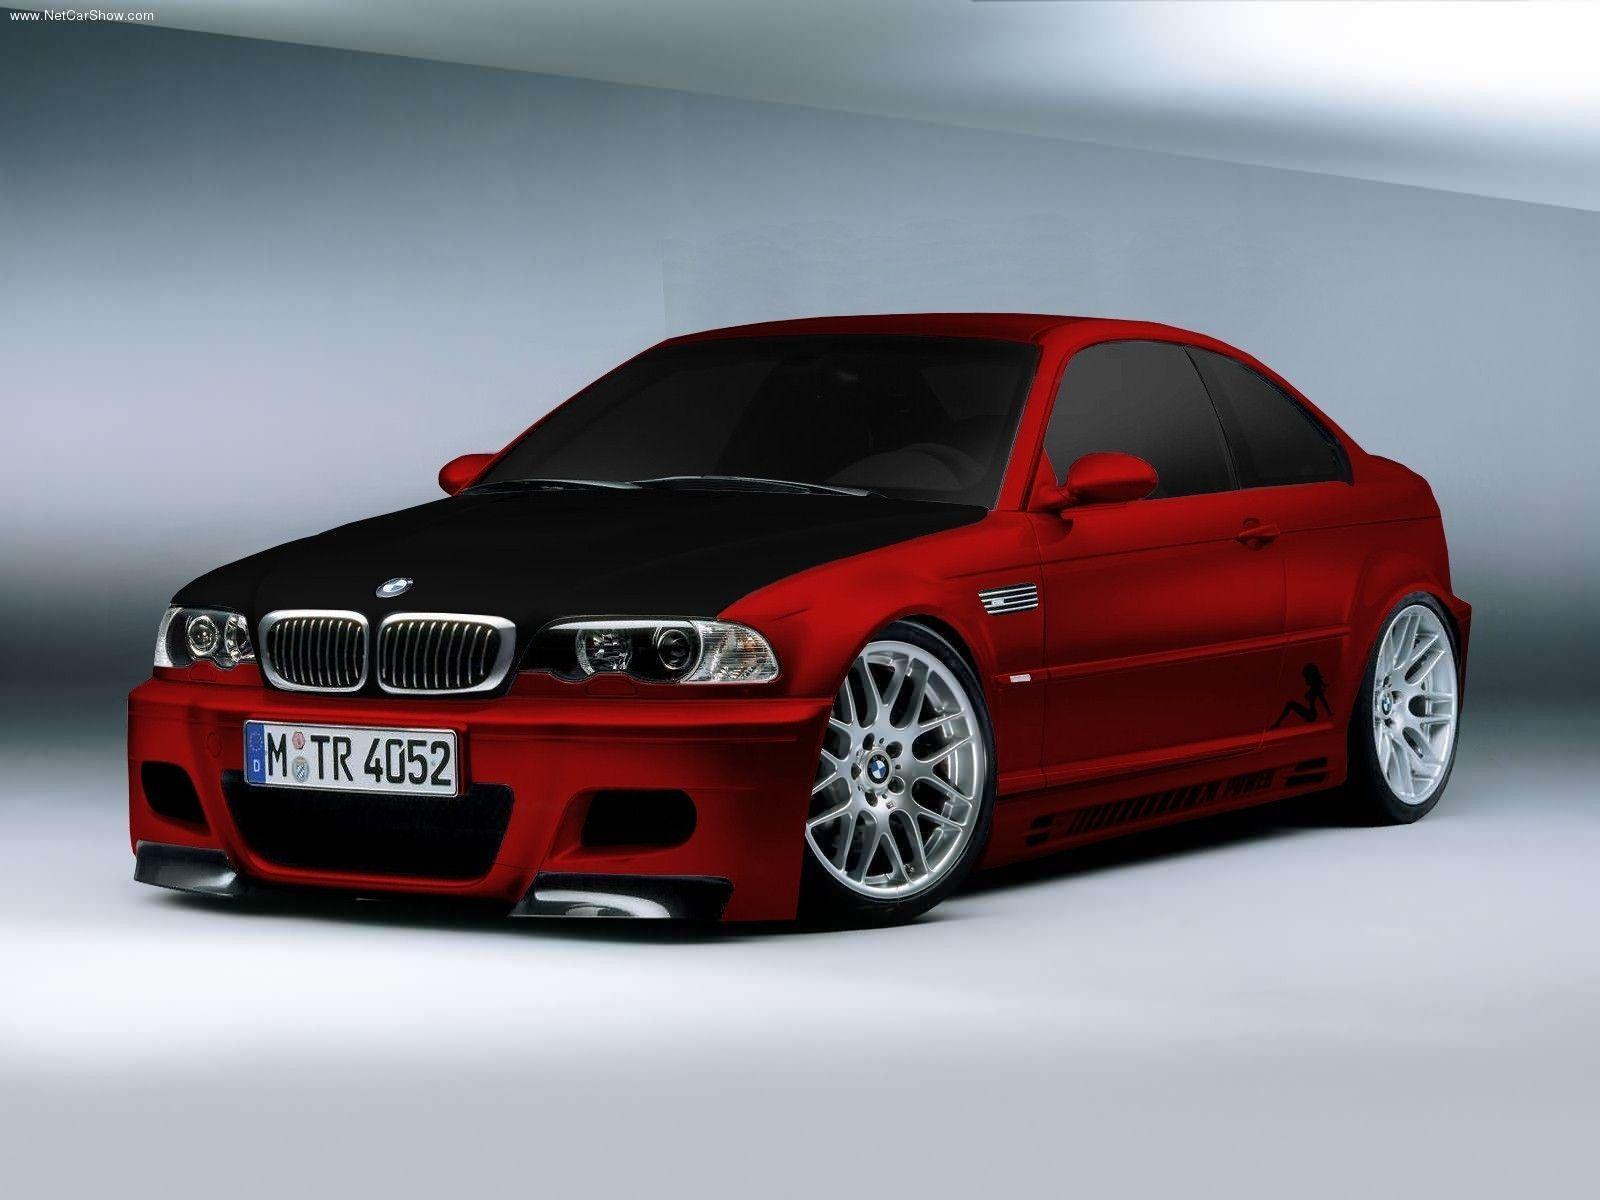 BMW M3 wallpaper. Cool HD Wallpaper 1080p